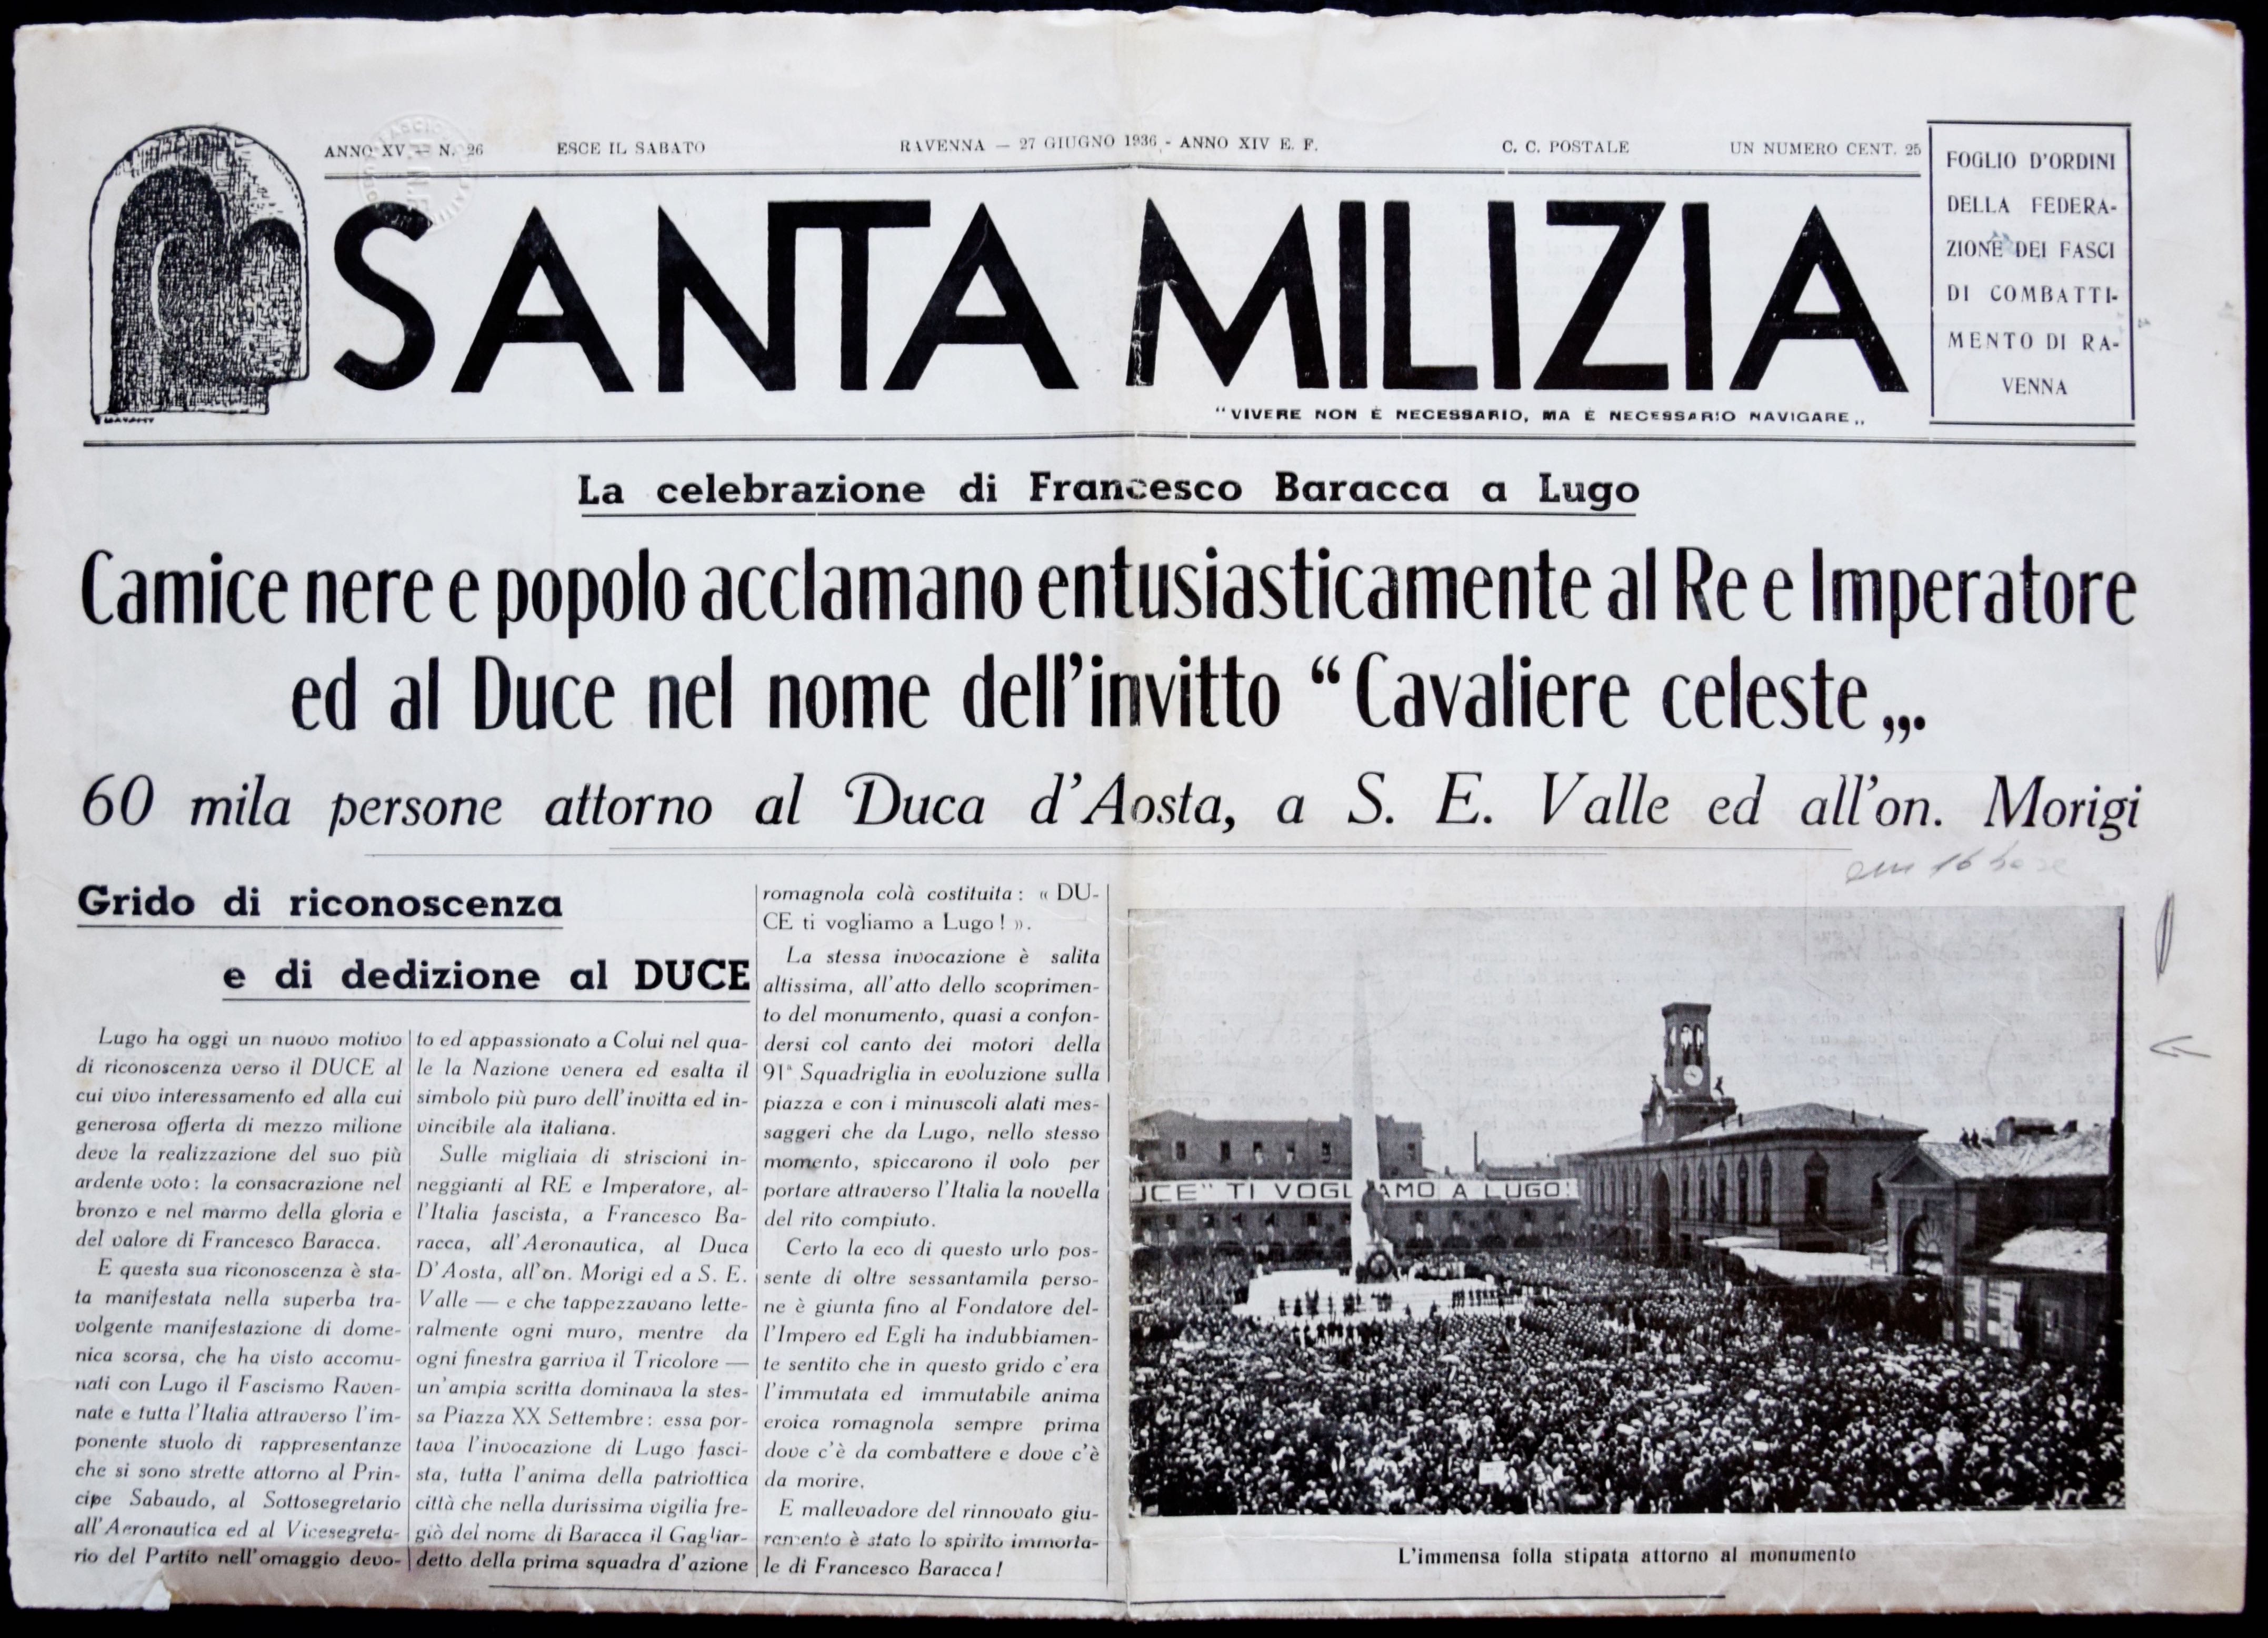 Fig. 7. Testata del periodico della Federazione fascista di Ravenna del 27 giugno 1936 che pubblicando la fotografia dell’inaugurazione ne riquadra una parte per mostrare la piazza affollata.